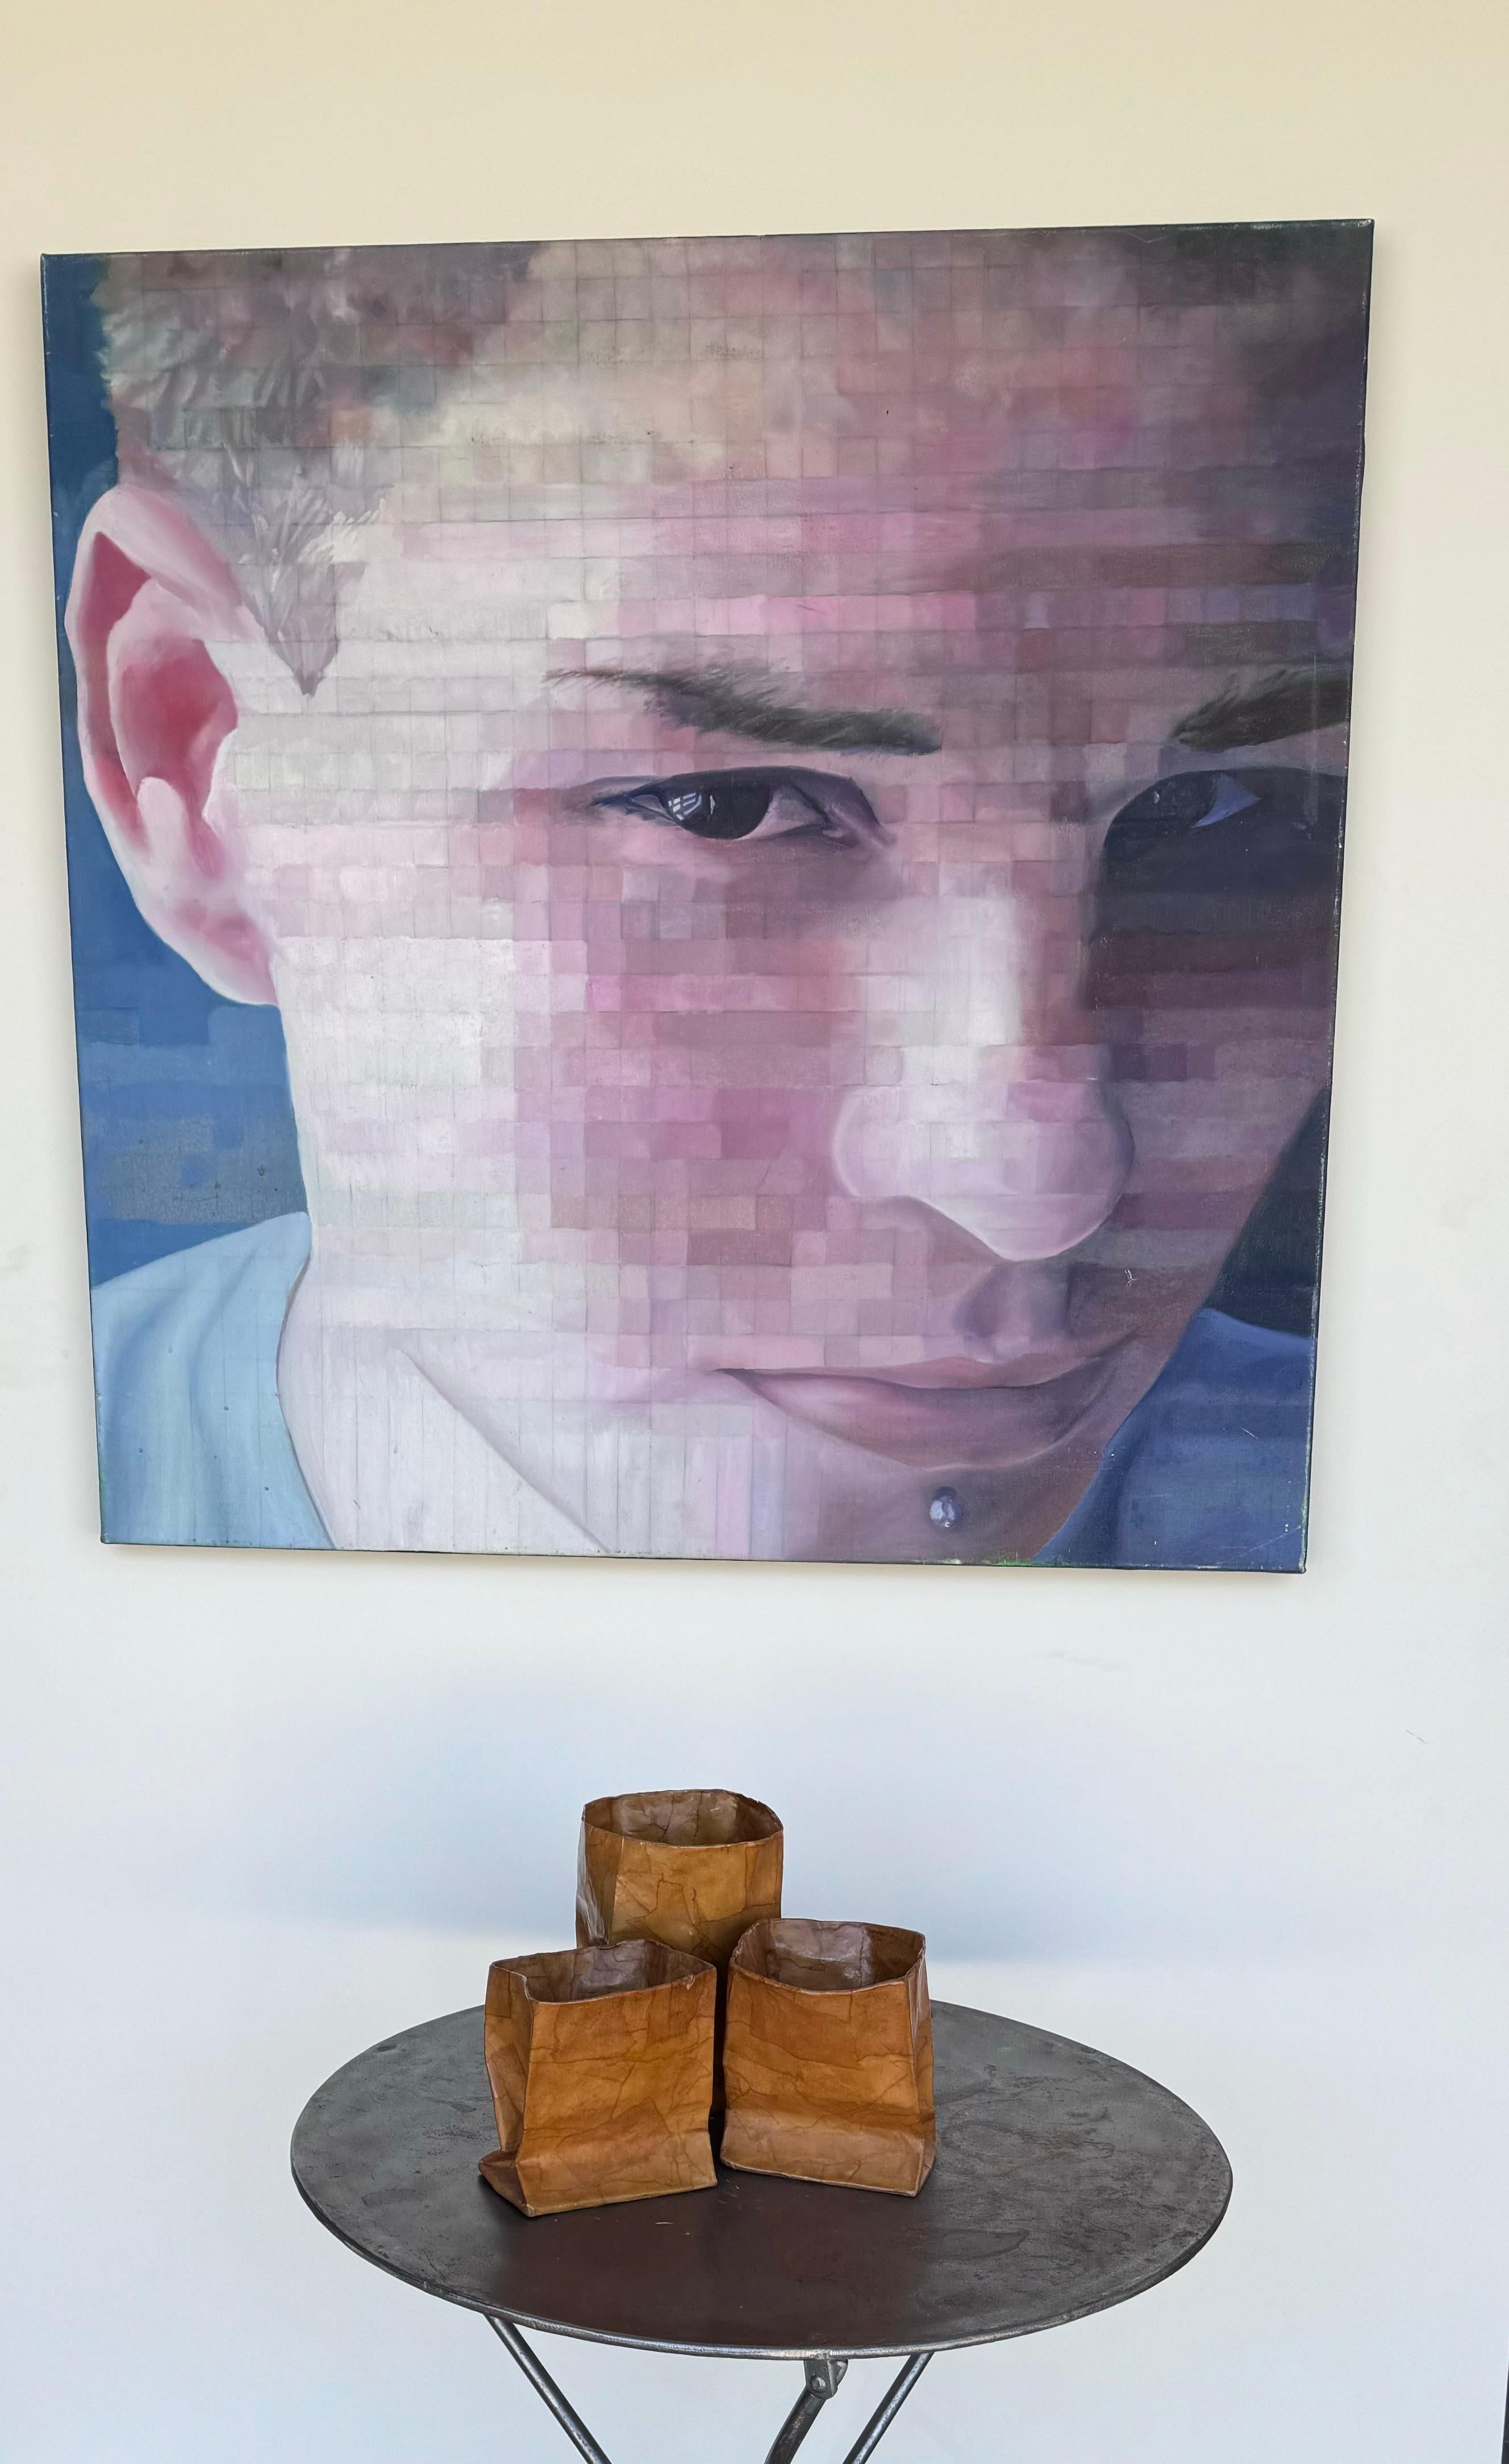 Große Acryl auf Leinwand Porträt Hut eines jungen Mannes mit einem Gesichts-Piercing, mit Mosaik wie Zellen, die von dem weltbekannten Künstler Chuck Close popularisiert wurden.  Die Rückseite trägt den Namen Chris in Bleistift.  Messung 34